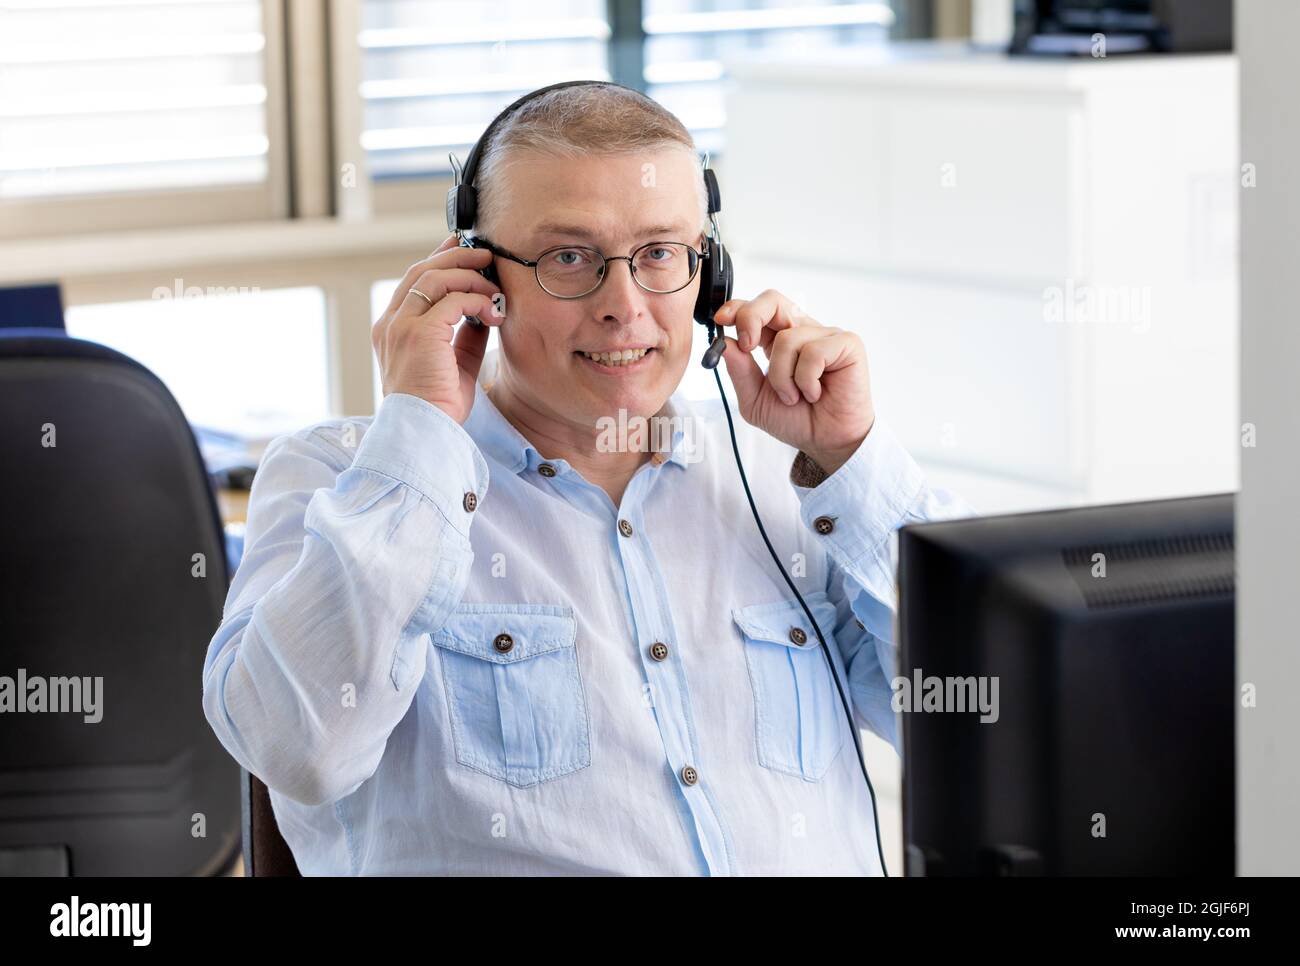 Ein Mann arbeitet als Manager in einem Büro und spricht mit Kunden im Internet über einen Computer mit Kopfhörern und einem Mikrofon. Mann mit europäischem Auftritt in einem blauen Hemd sitzt im Büro mit dem Rücken zum Fenster. Stockfoto